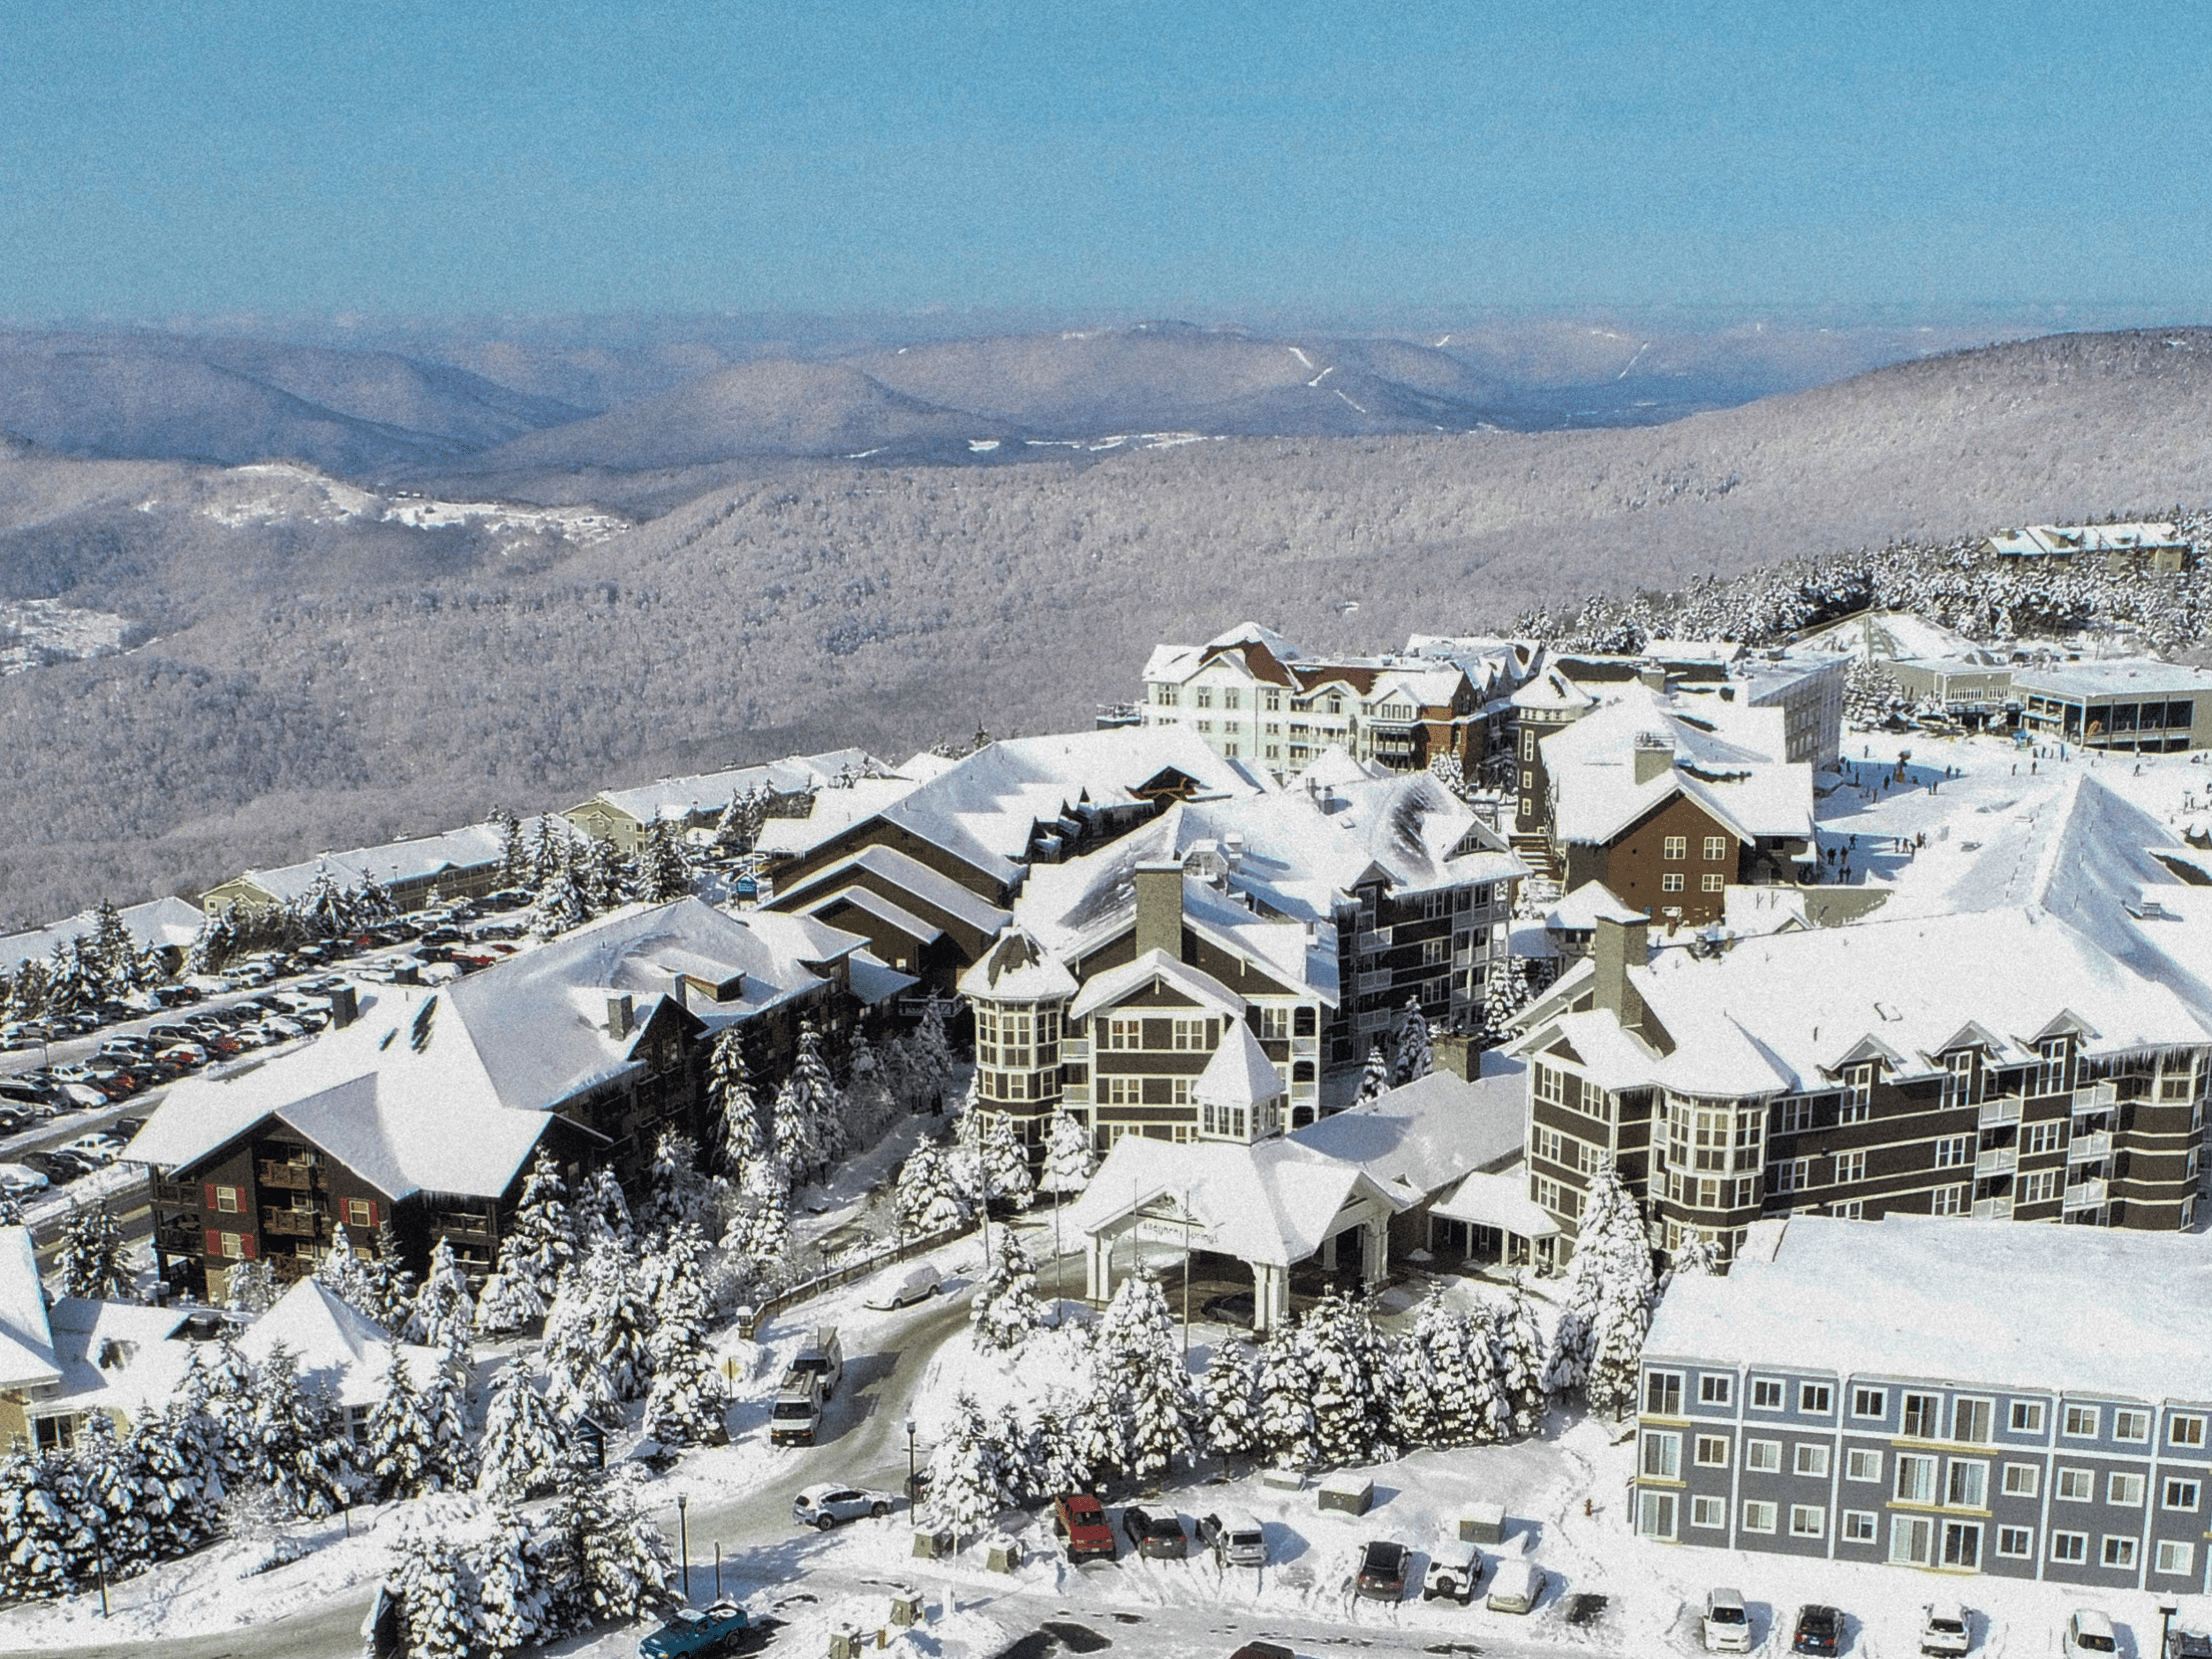 Snowshoe Village